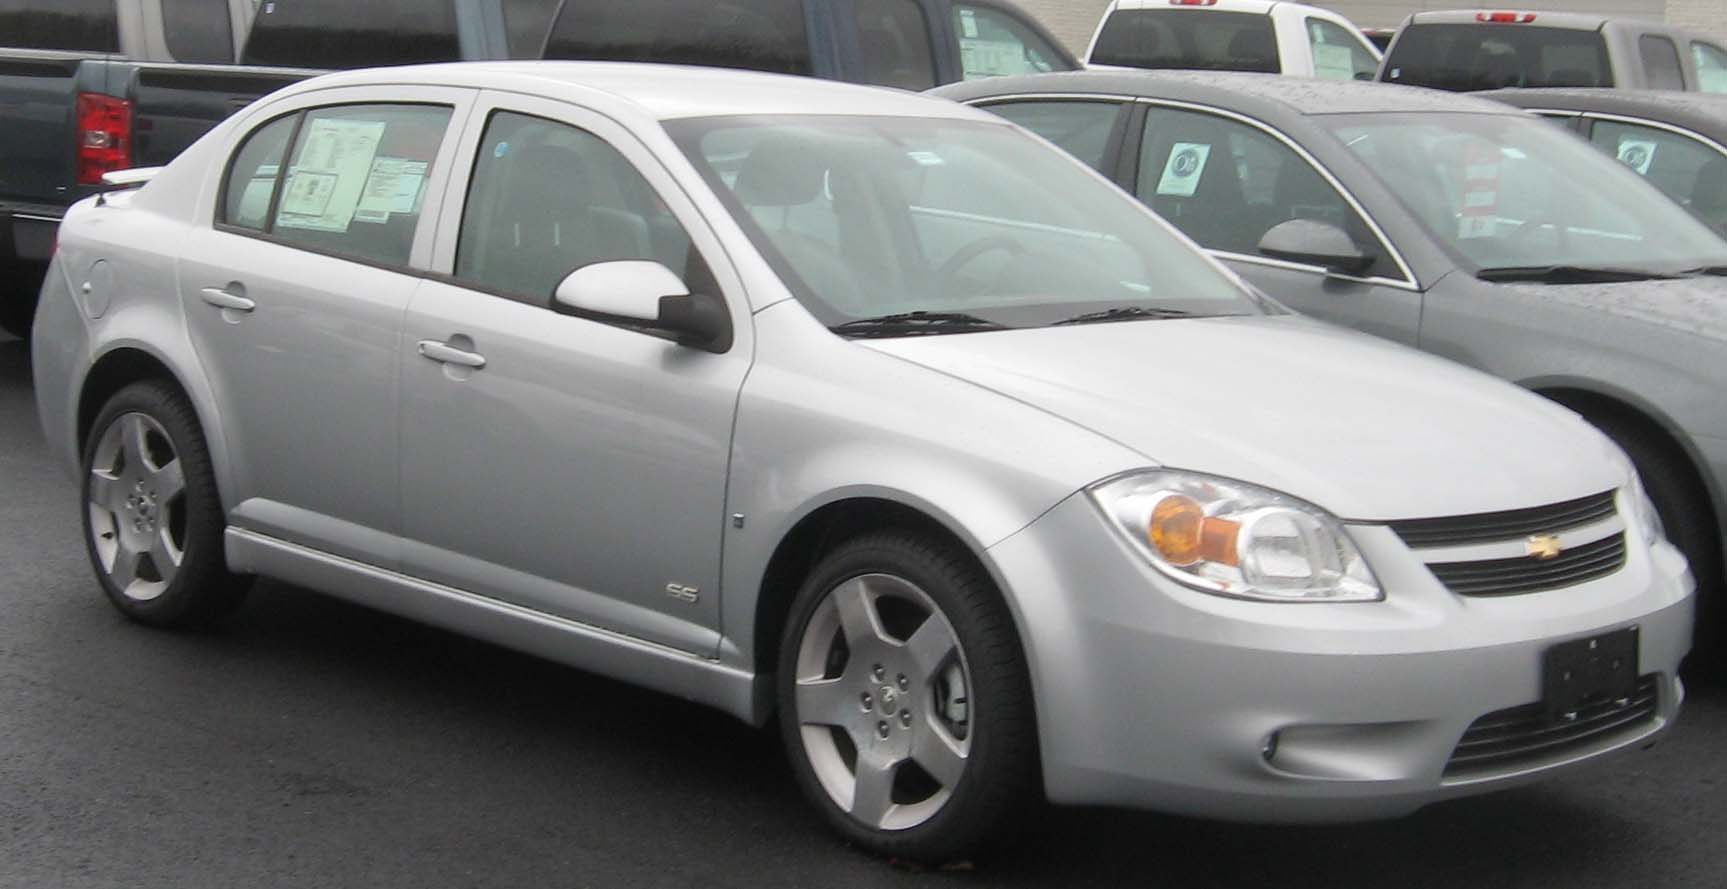 File:2008 Chevrolet Cobalt SS sedan.jpg - Wikimedia Commons